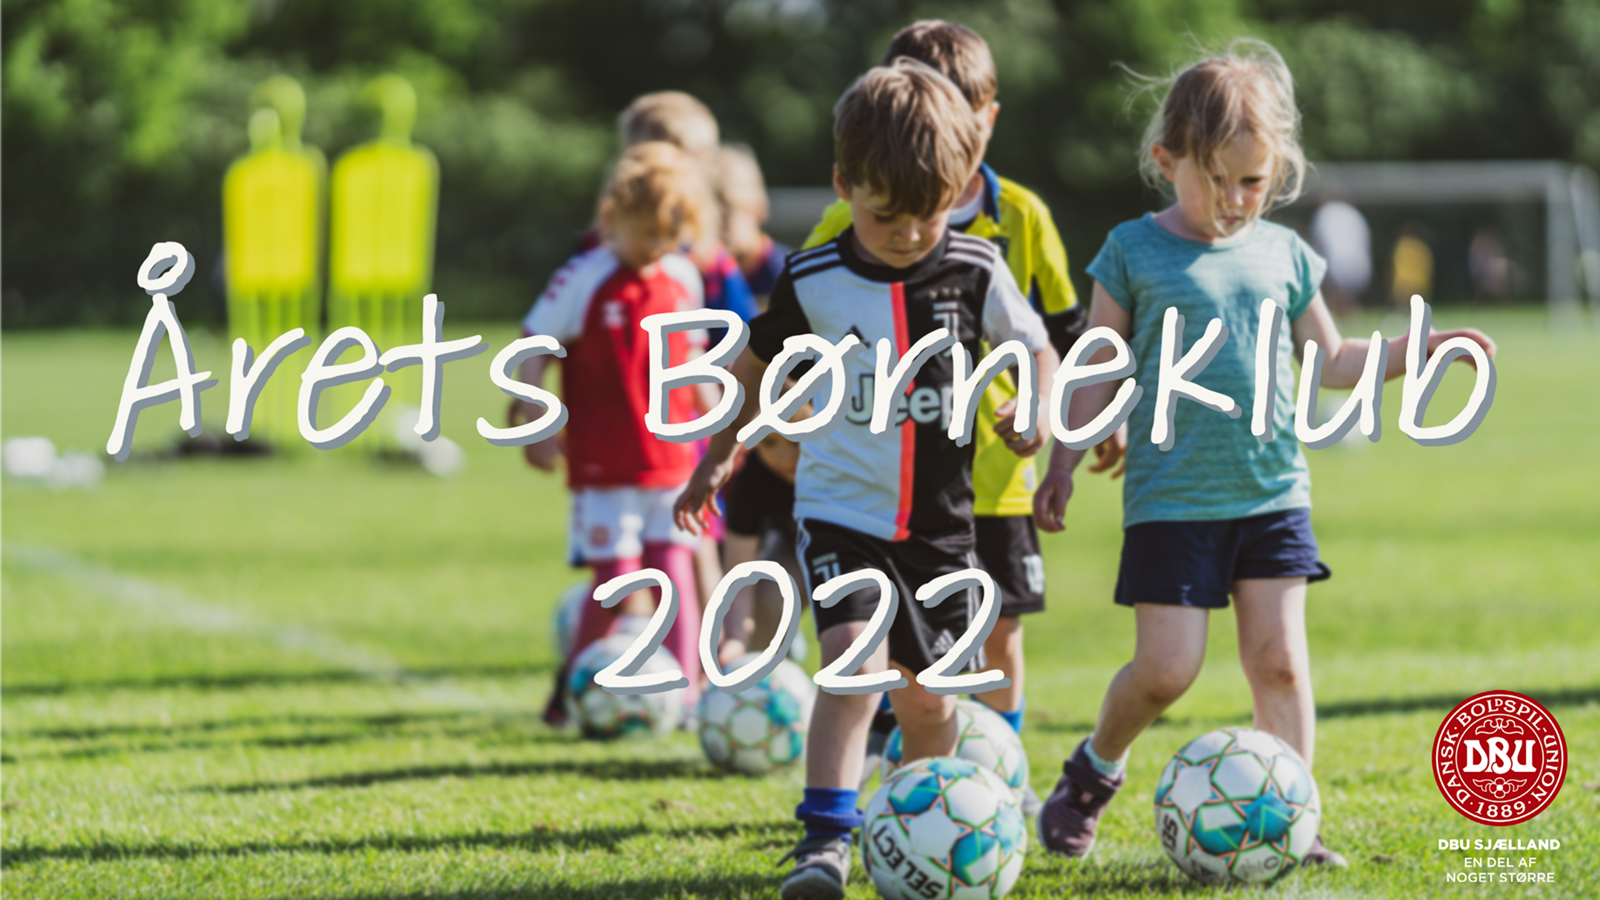 Skal din klub kåres til Årets børneklub 2022?